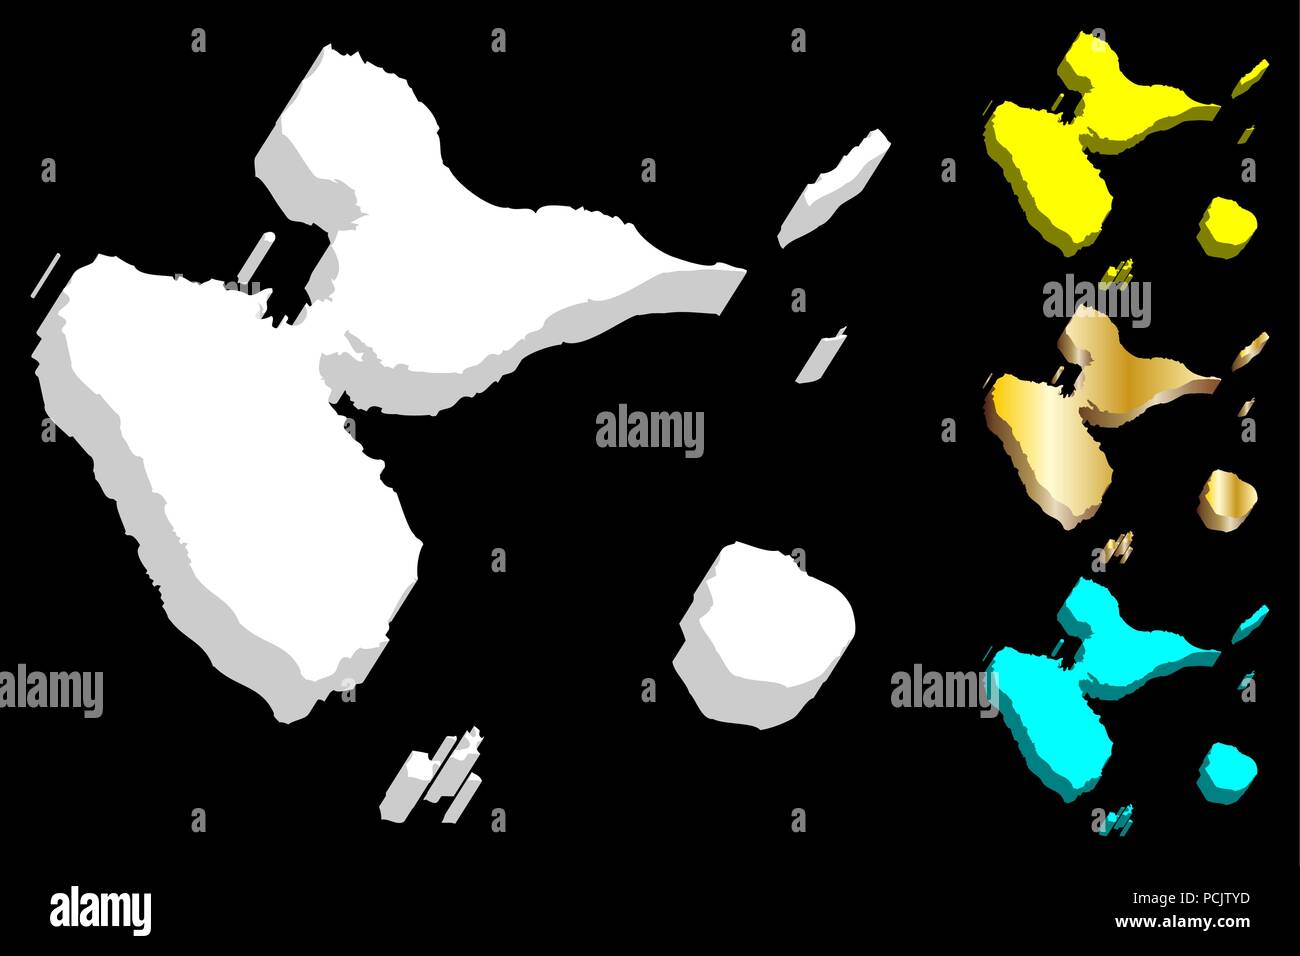 3D de la carte de Guadeloupe (région de l'île - l'île de France) - blanc, jaune, bleu et or - vector illustration Illustration de Vecteur